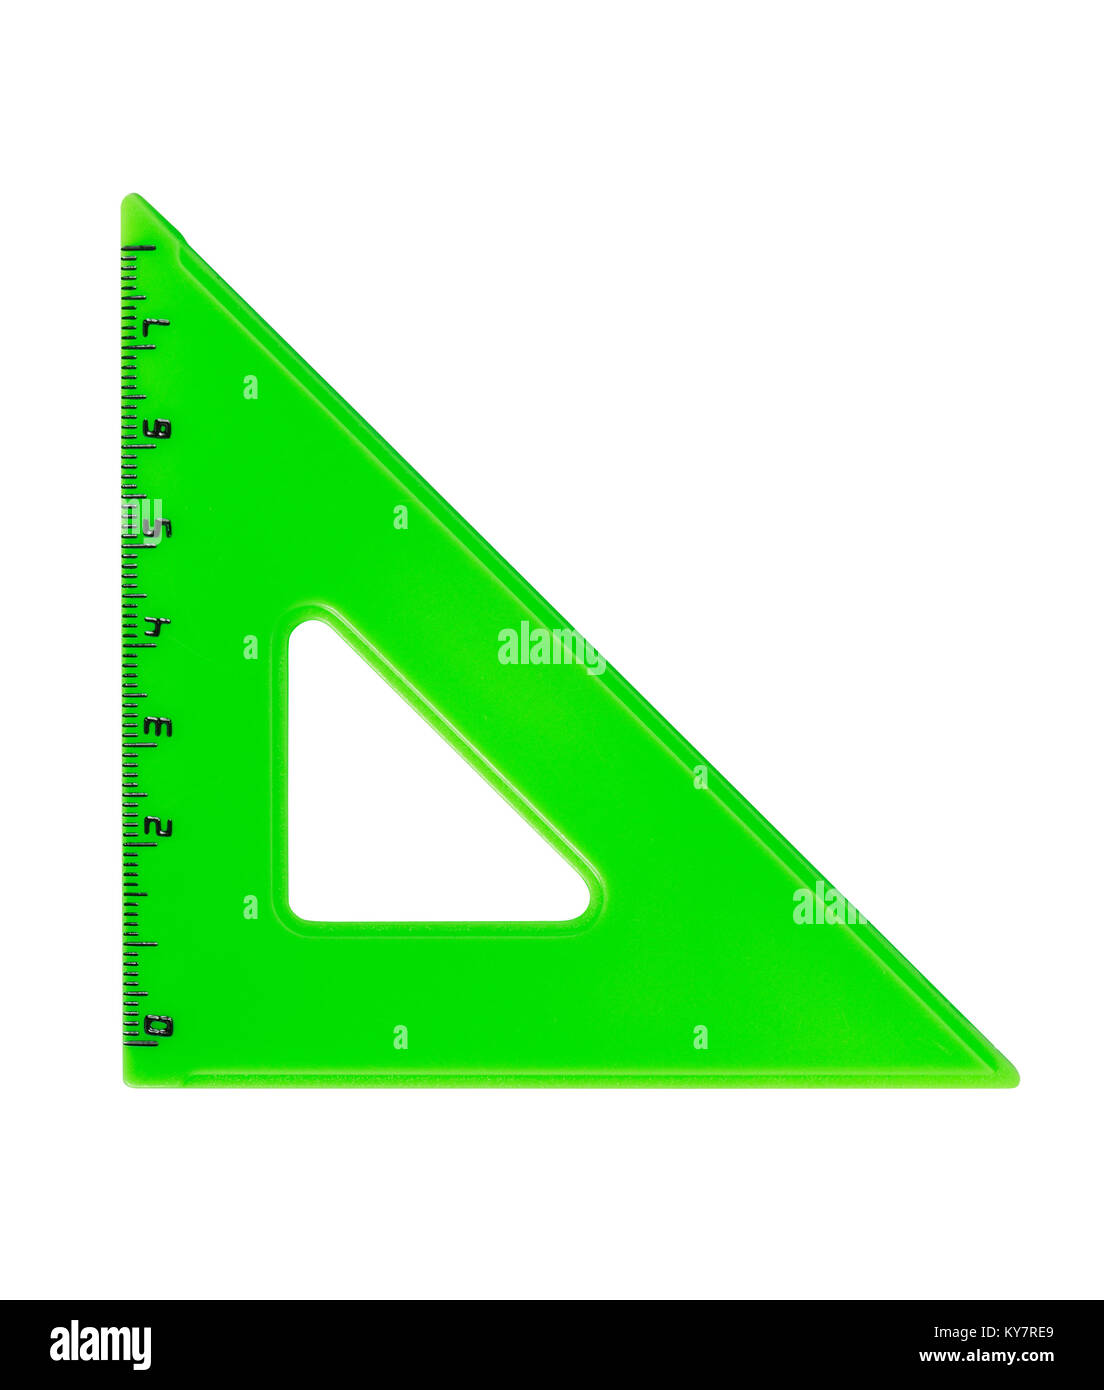 Metrica verde triangolo in plastica isolato su sfondo bianco con tracciato di ritaglio Foto Stock